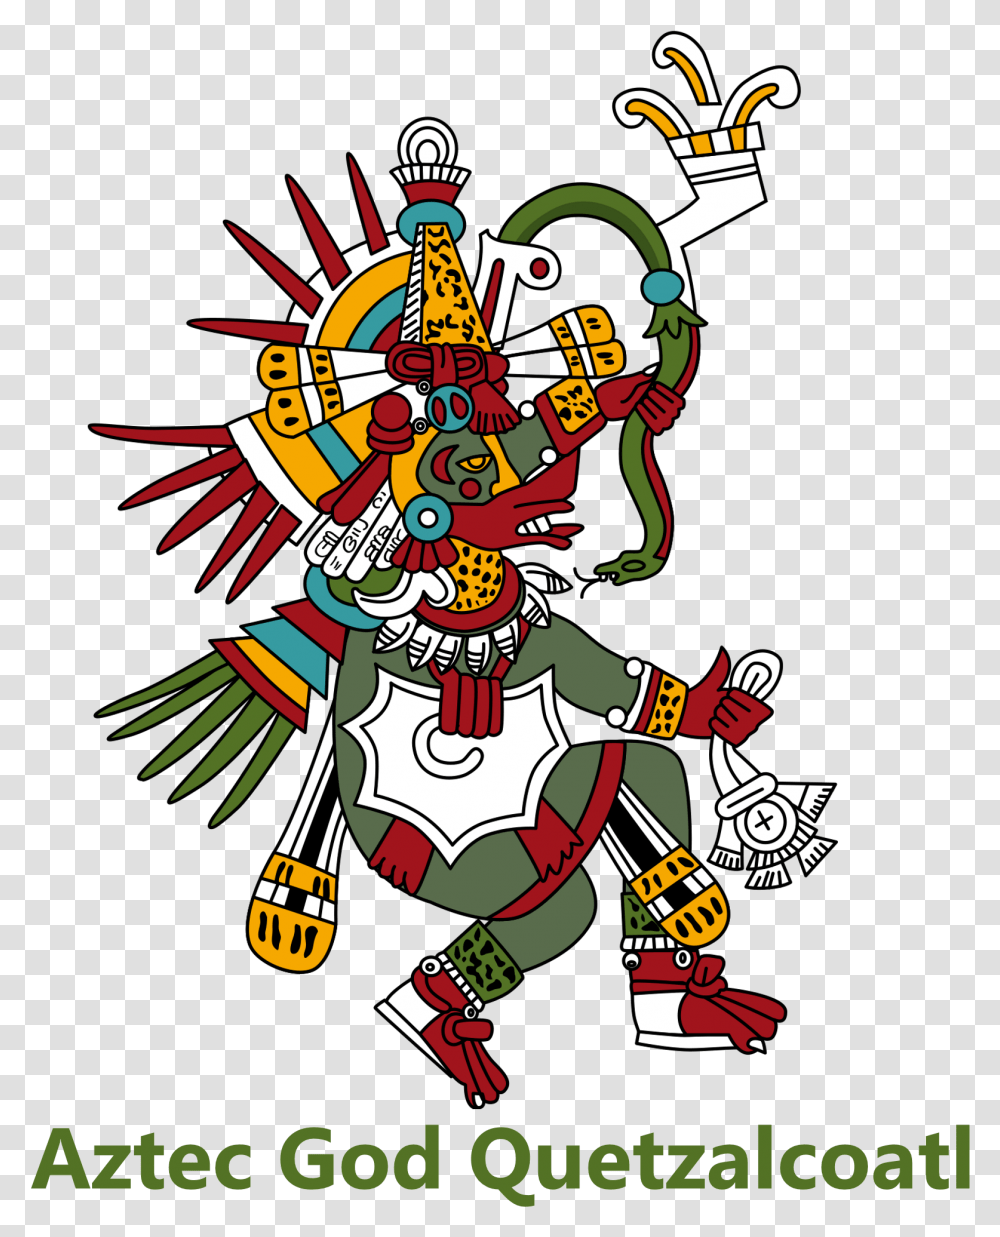 Aztec God Quetzalcoatl Jpg Free Aztec God Quetzalcoatl, Emblem, Pirate, Poster Transparent Png